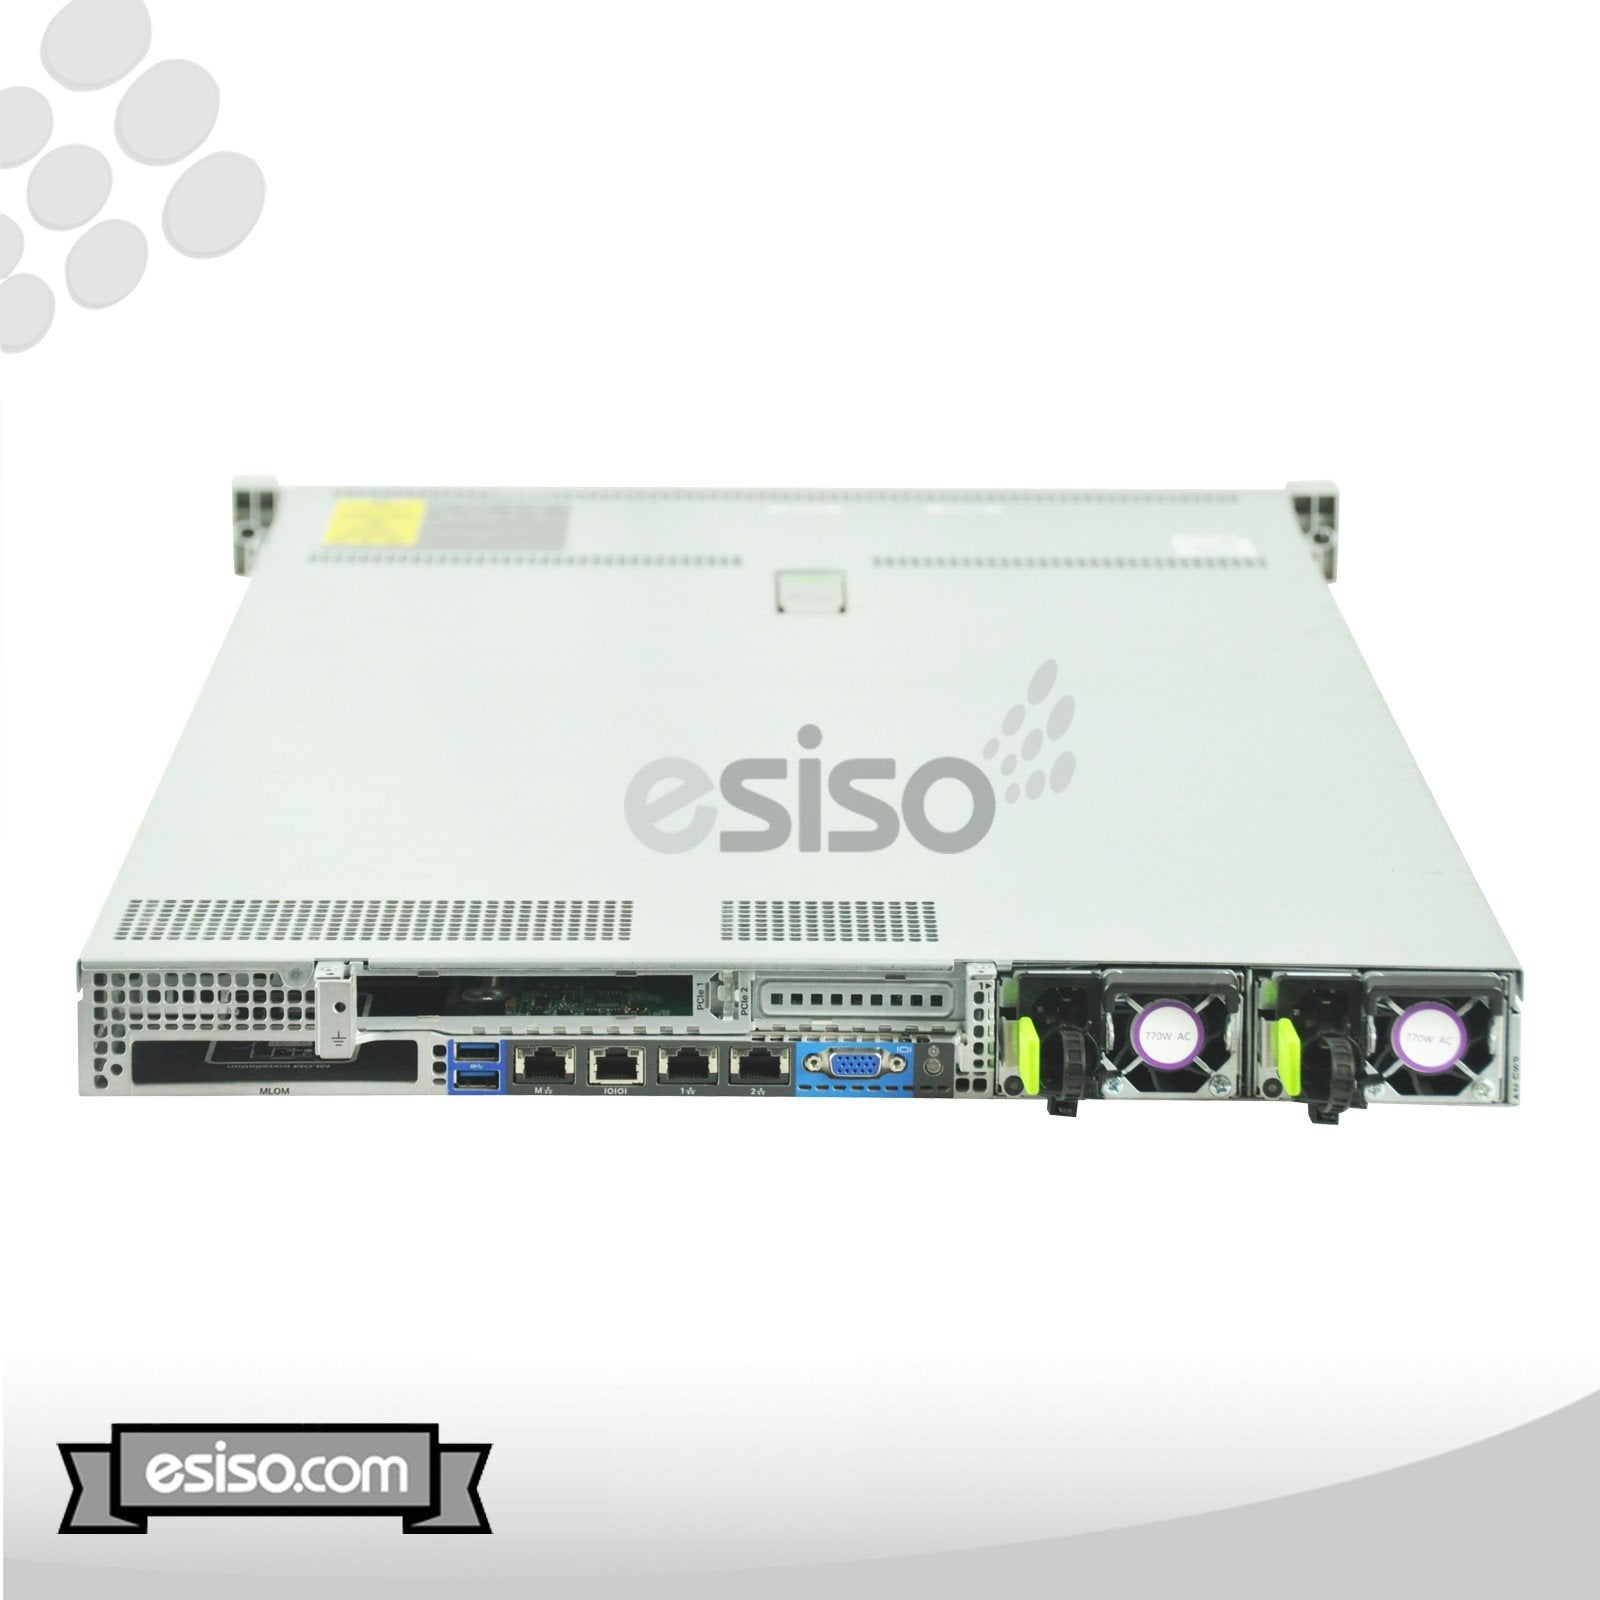 CISCO UCS C220 M4 8SFF 2x 6 CORE E5-2620v3 2.4GHz 64GB RAM 8x 300GB